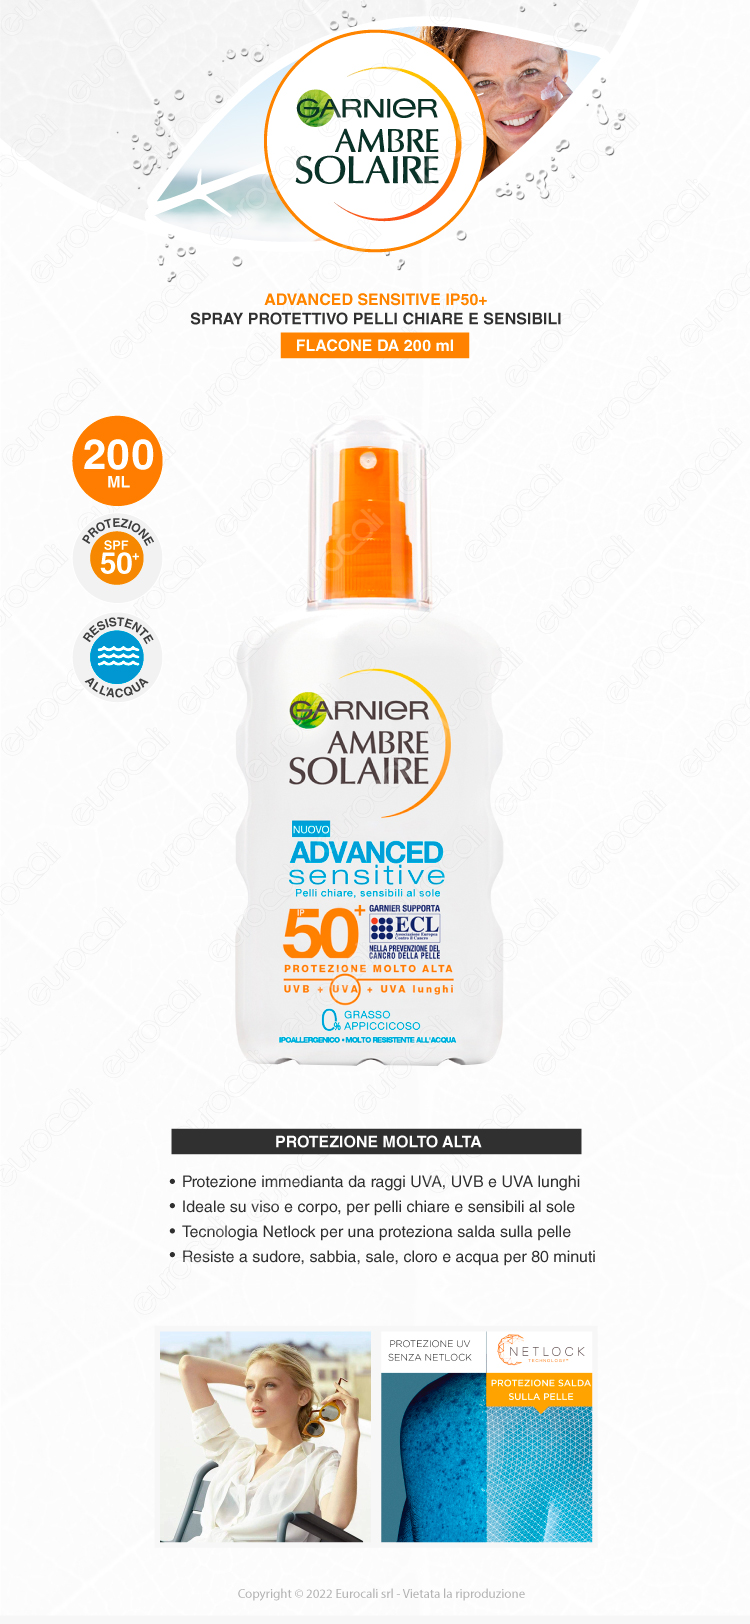 garnier ambre solaire advanced sensitive spray solare 50+ 200ml